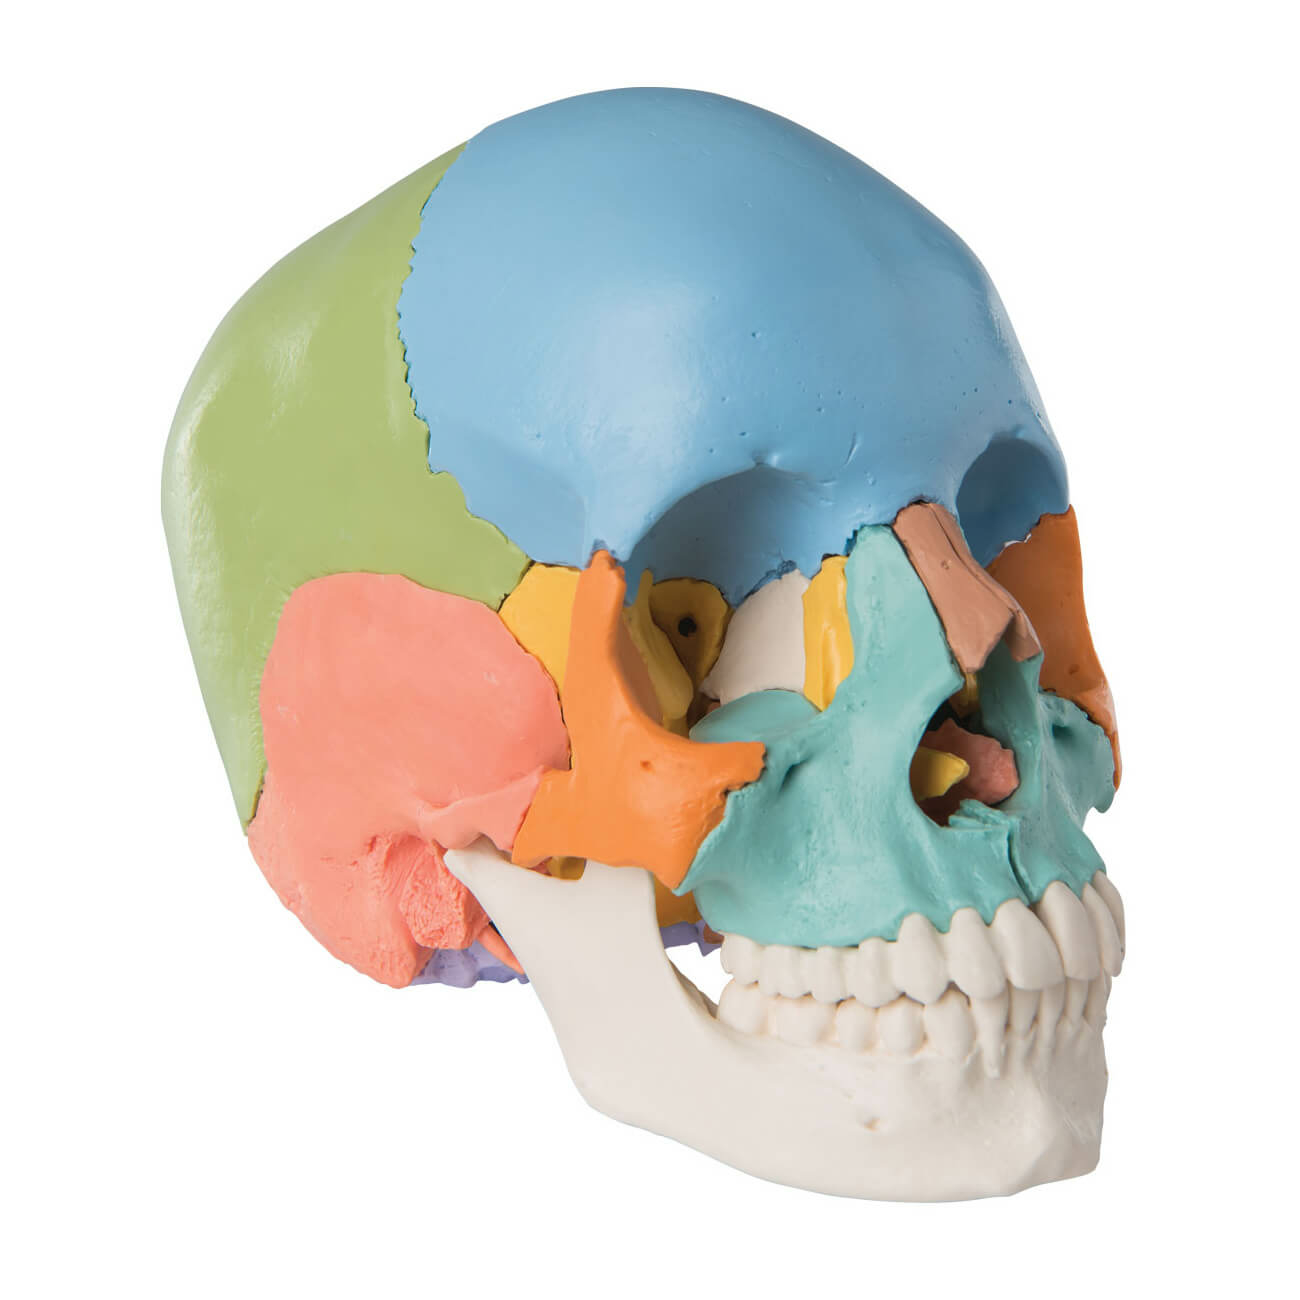 Crâne humain classic 3 parties 3B Scientific - Matériel didactique